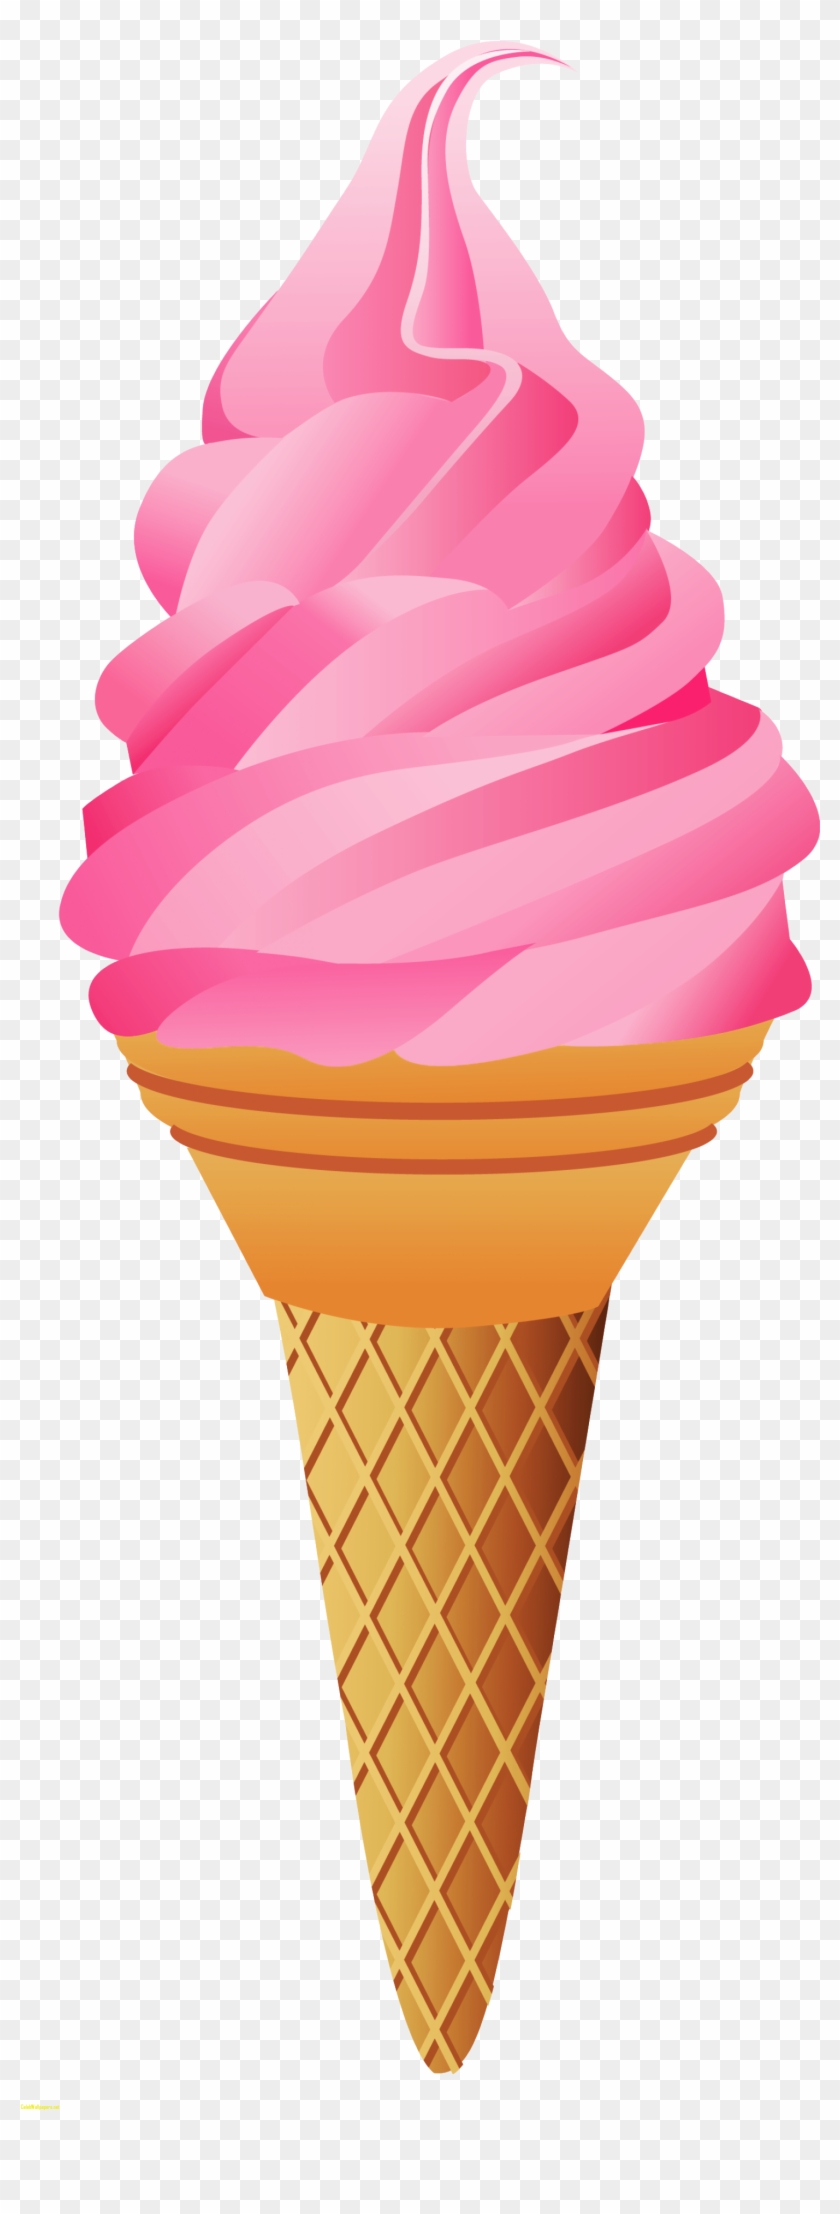 Ice Cream Pictures Ice Cream Cone Ice Creamne Clip - Ice Cream Cones Transparent #172142